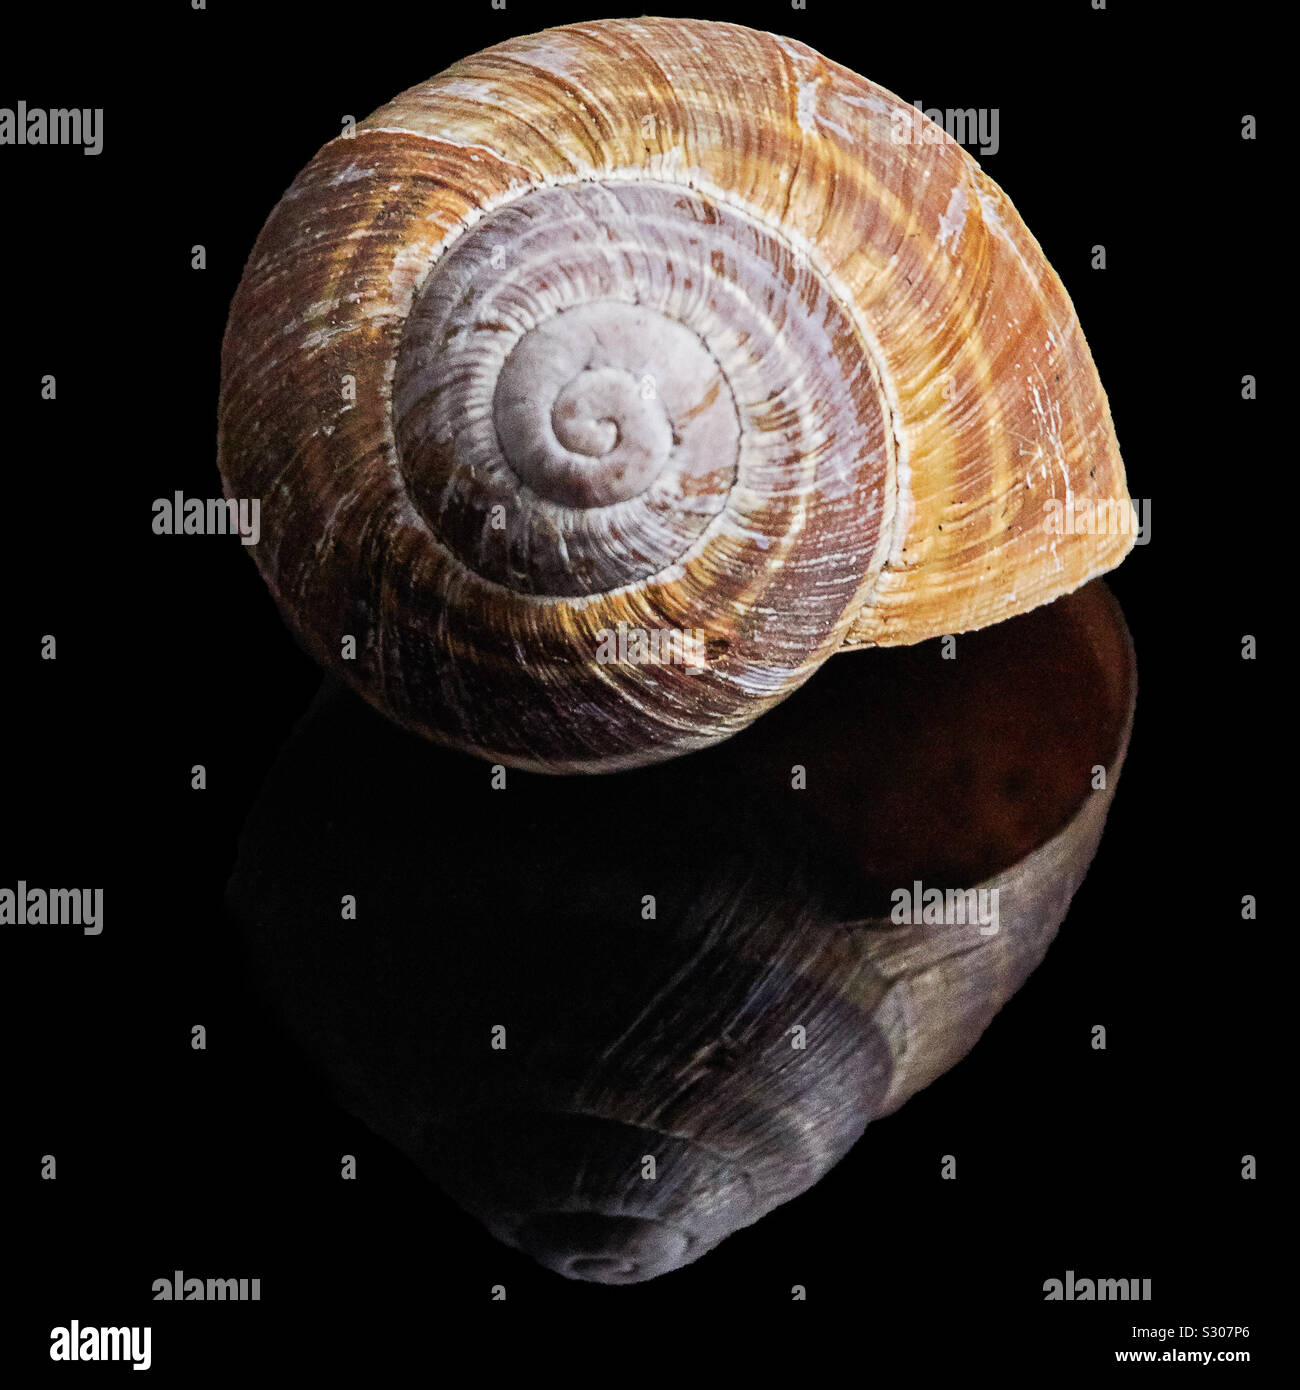 Une coquille d'escargot vide beige brun avec beaucoup de détails est posé sur une surface noire réfléchissante Banque D'Images